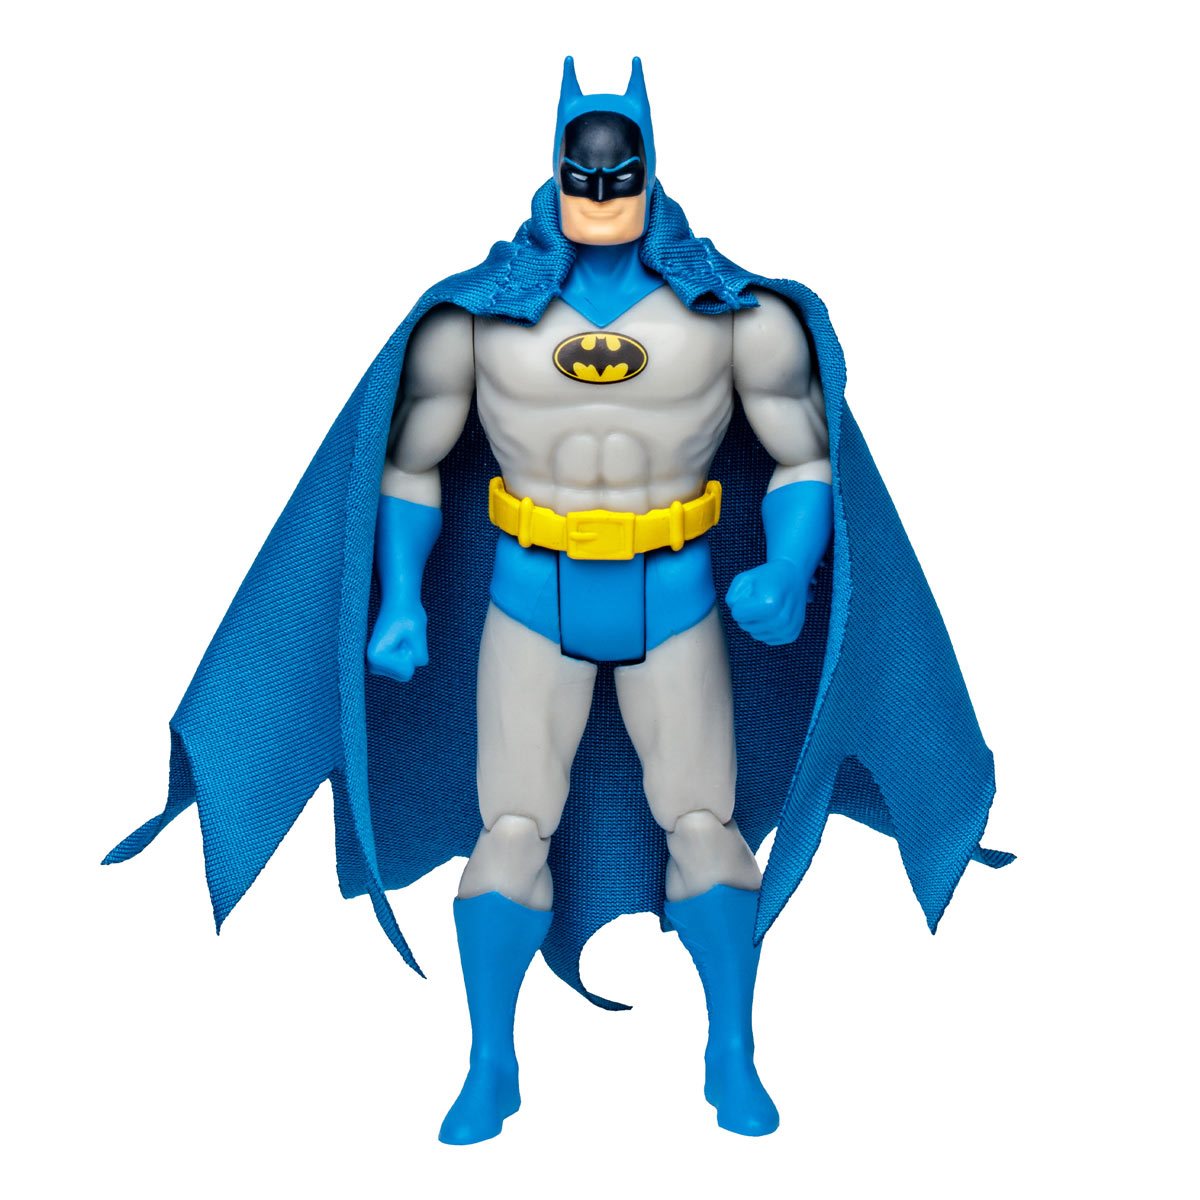 DC Super Powers Wave 4 Batman Classic Detective 4-Inch Scale Action Figure